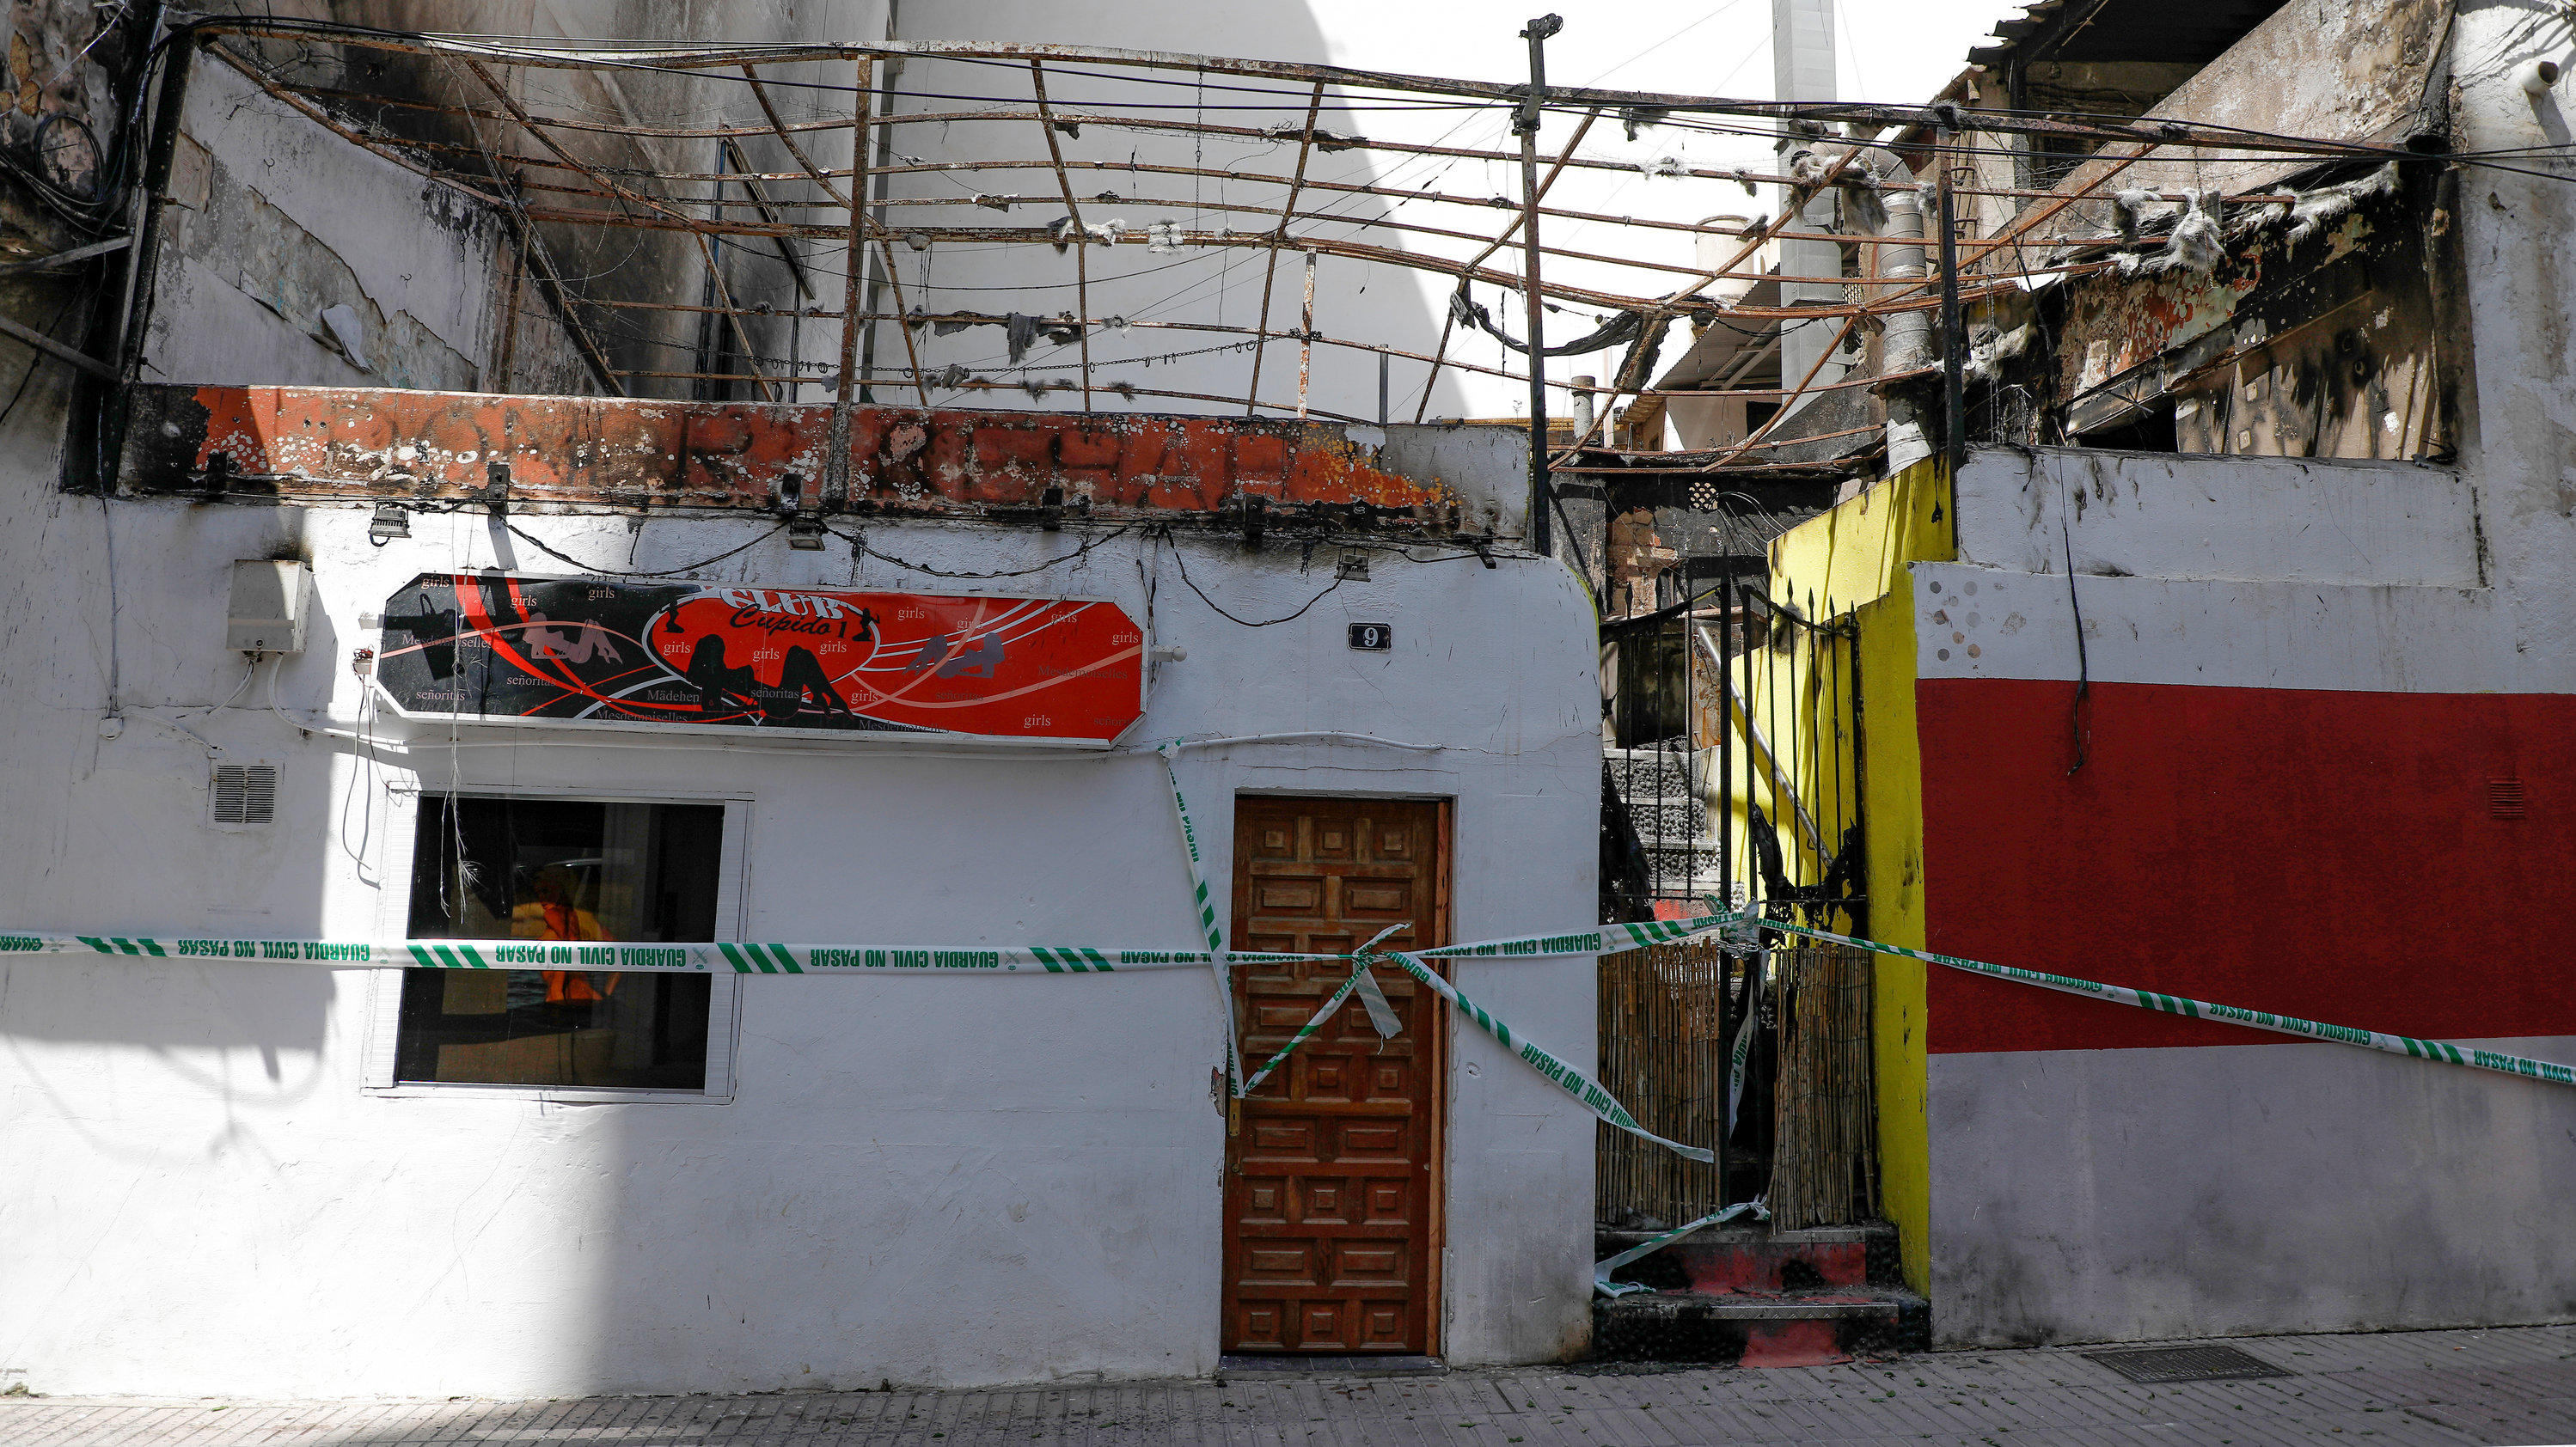 23.05.2022, Spanien, Palma: Durch einen Brand beschädigte Lokale sind gesperrt. Laut spanischen Medienberichten wurde das Restaurant «Why Not Mallorca?», dessen Terrassendach über dem Nachbarlokal «Cupido» aufgebaut war, stark beschädigt. Die Polizei